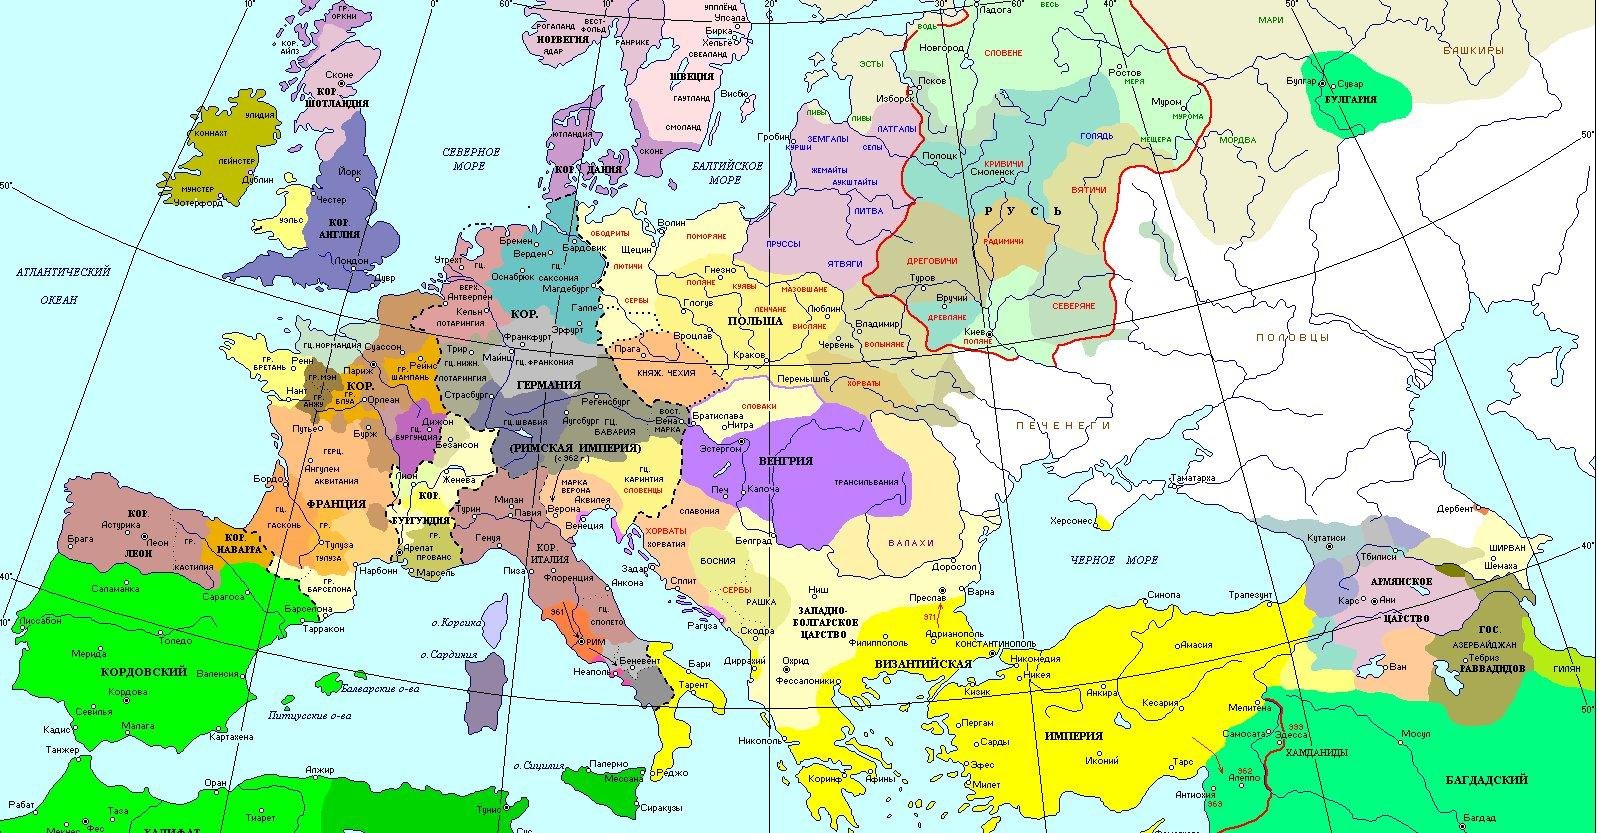 Карта европы 14 15 века. Карта Европы в средние века 10 век. Карта Европы 11 века. Восточная Европа в раннее средневековье карта. Европа в раннее средневековье карта.